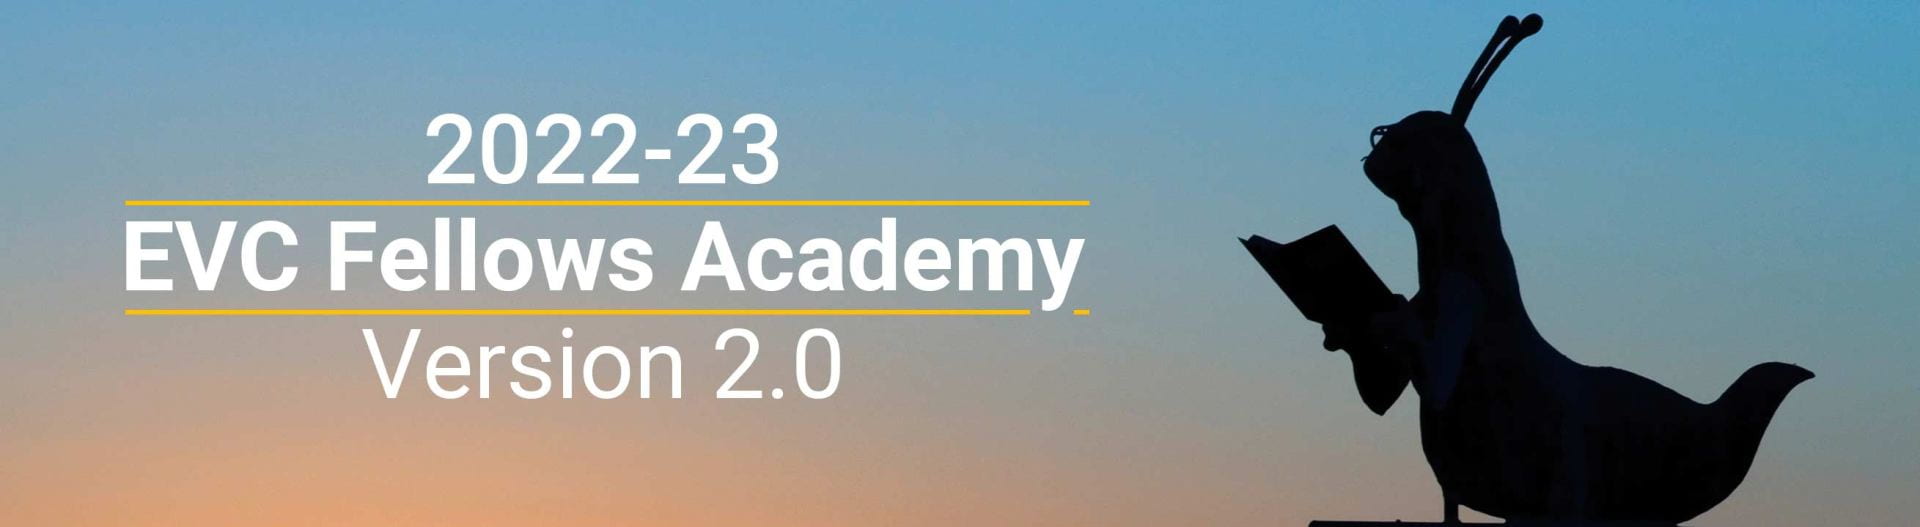 2022-23 EVC Fellows Academy version 2.0

